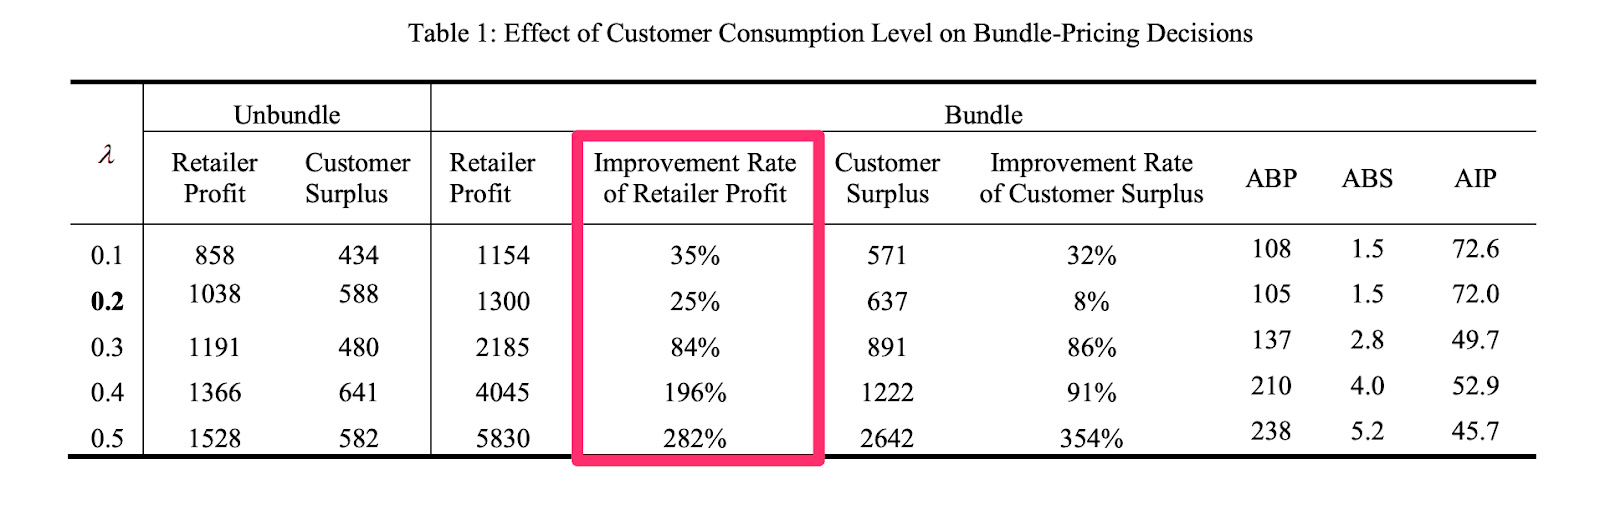 bundle pricing impact on retailer profit table